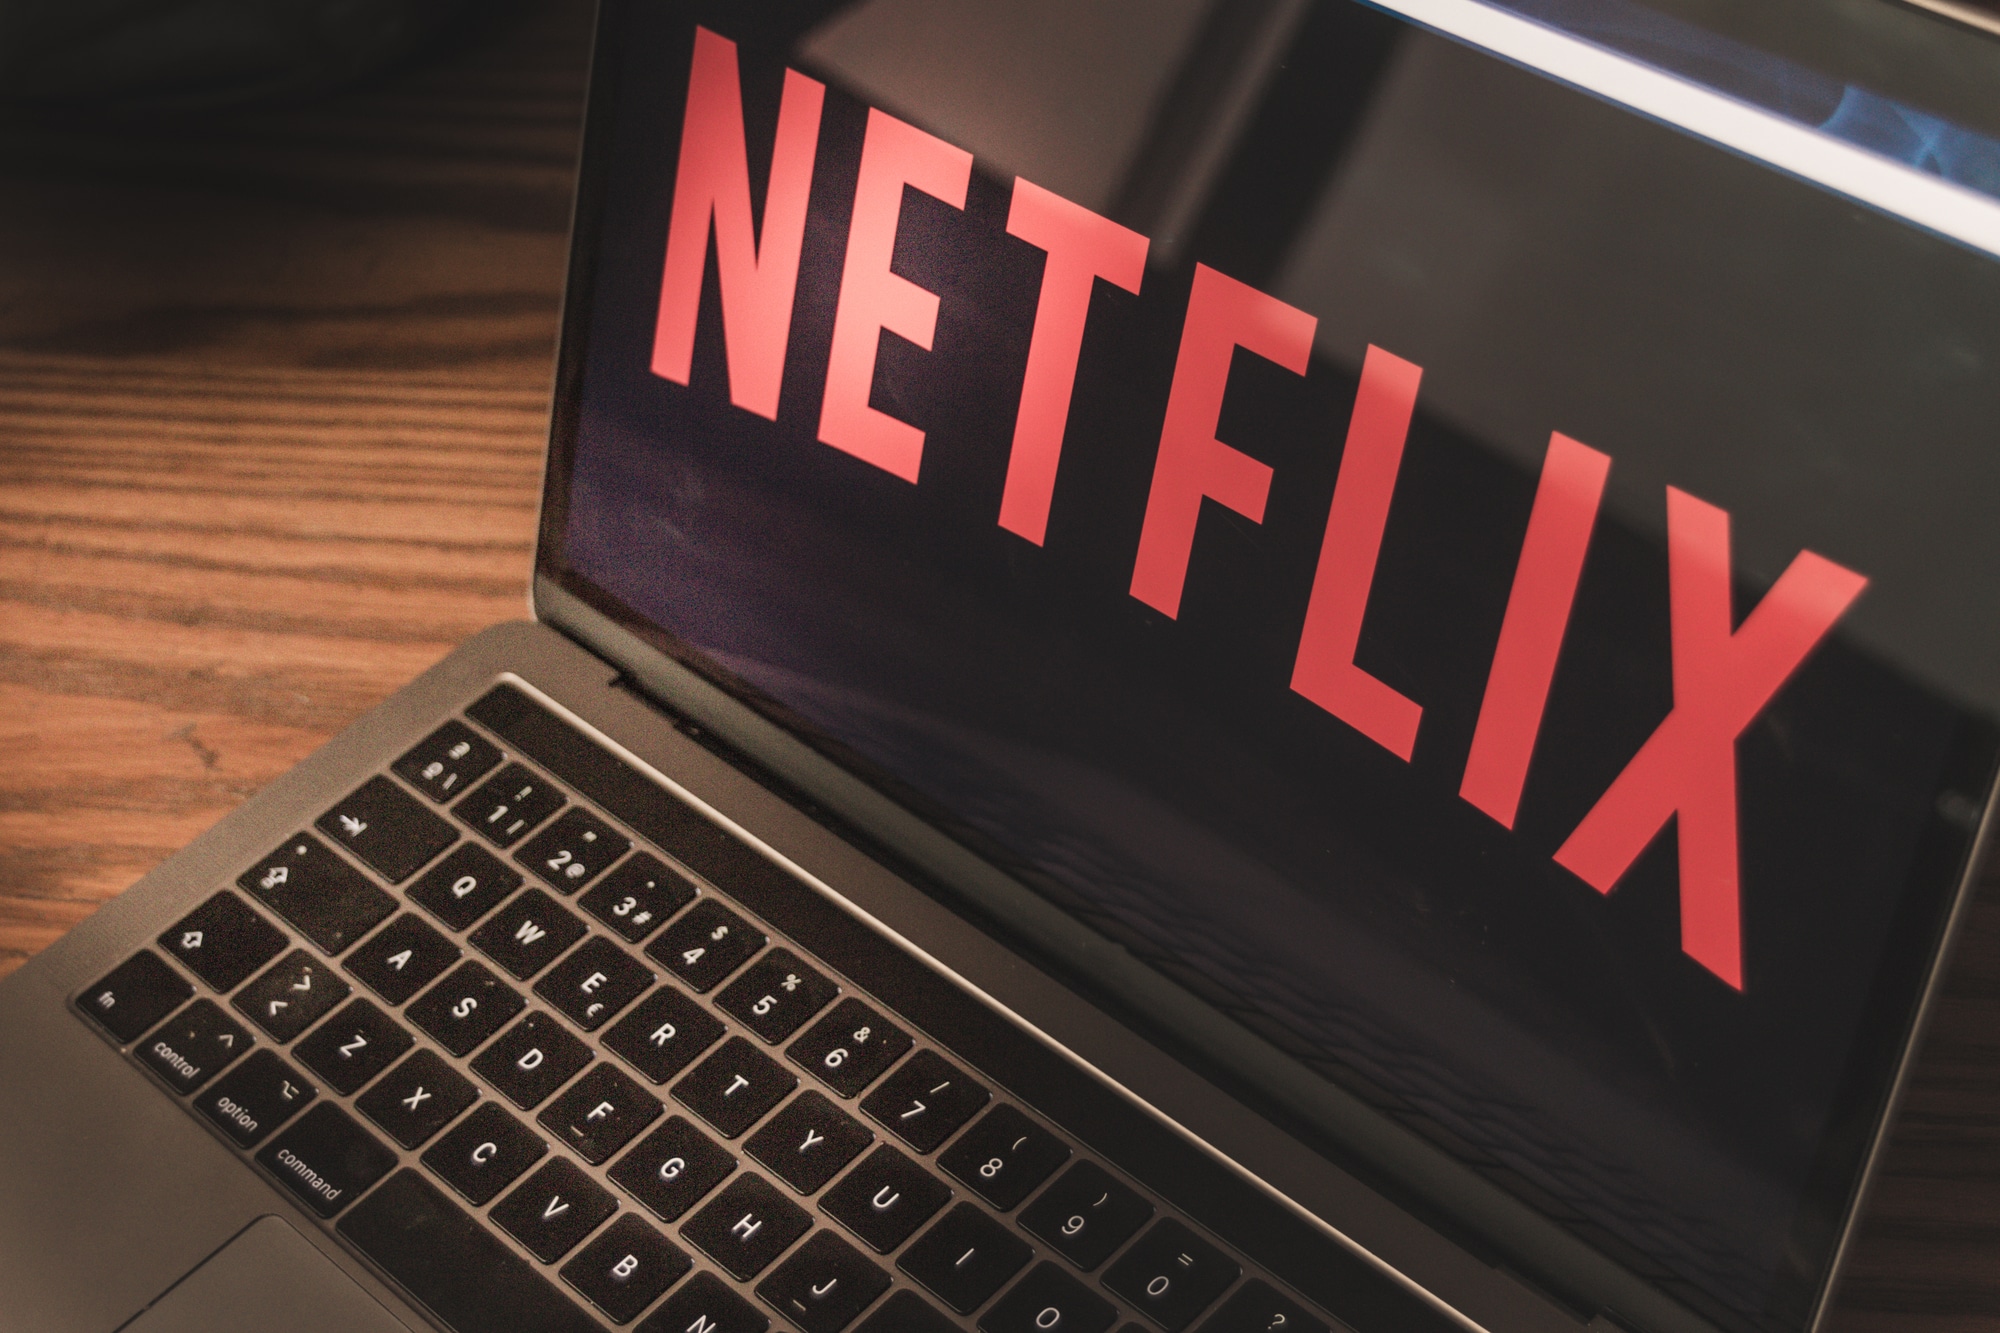 Netflix trasmetterà i canali della TV di Stato in Russia thumbnail